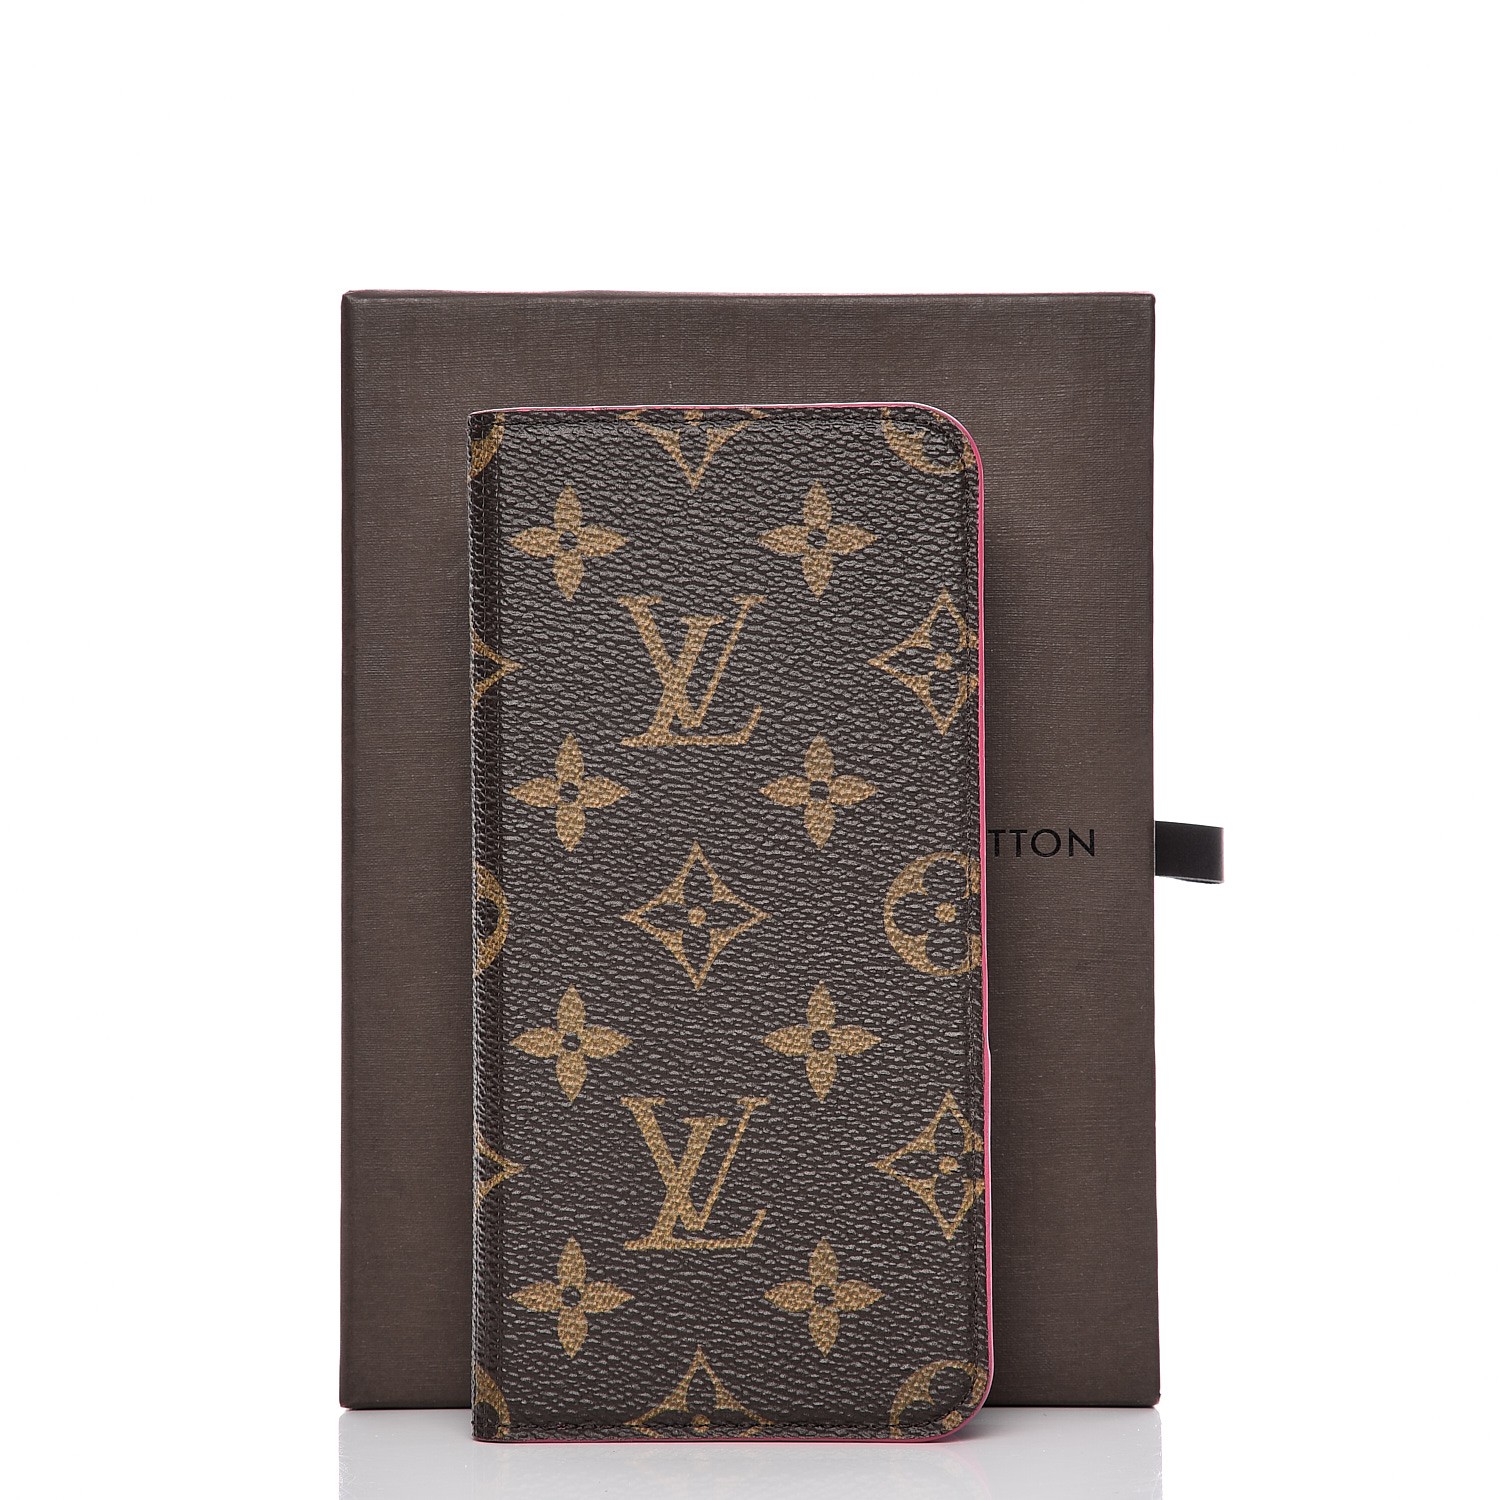 Classic Red Louis Vuitton Monogram x Supreme Logo iPhone 6S/6 Plus Case